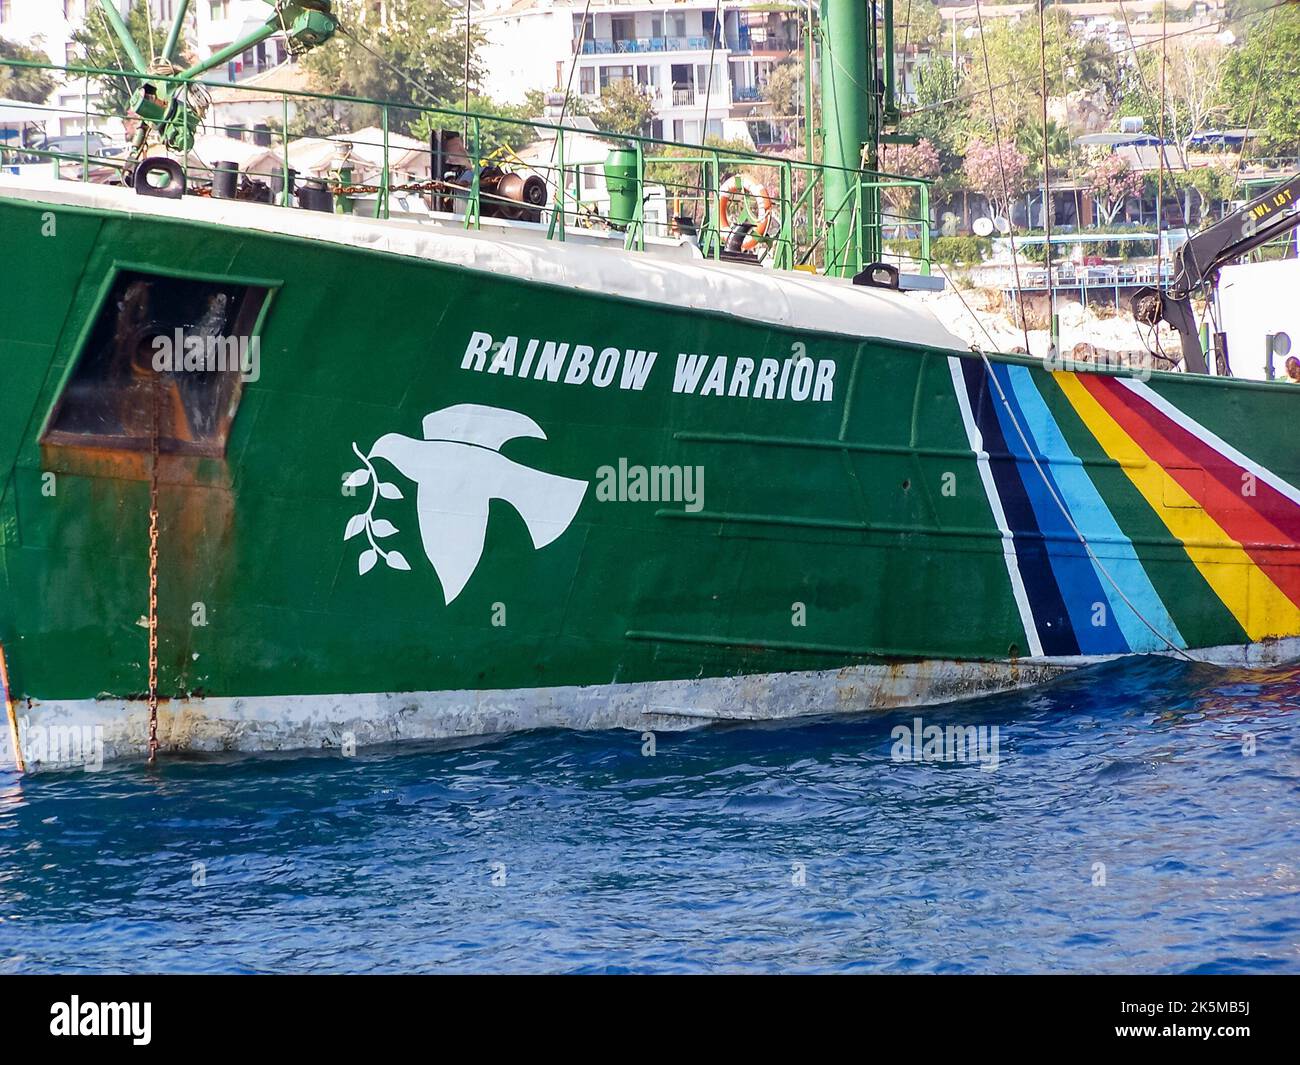 Kas, Turquie. 27 juillet 2006 - Greenpeace Rainbow Warrior est ancré au large des côtes de la Turquie au cours d'une visite. Banque D'Images